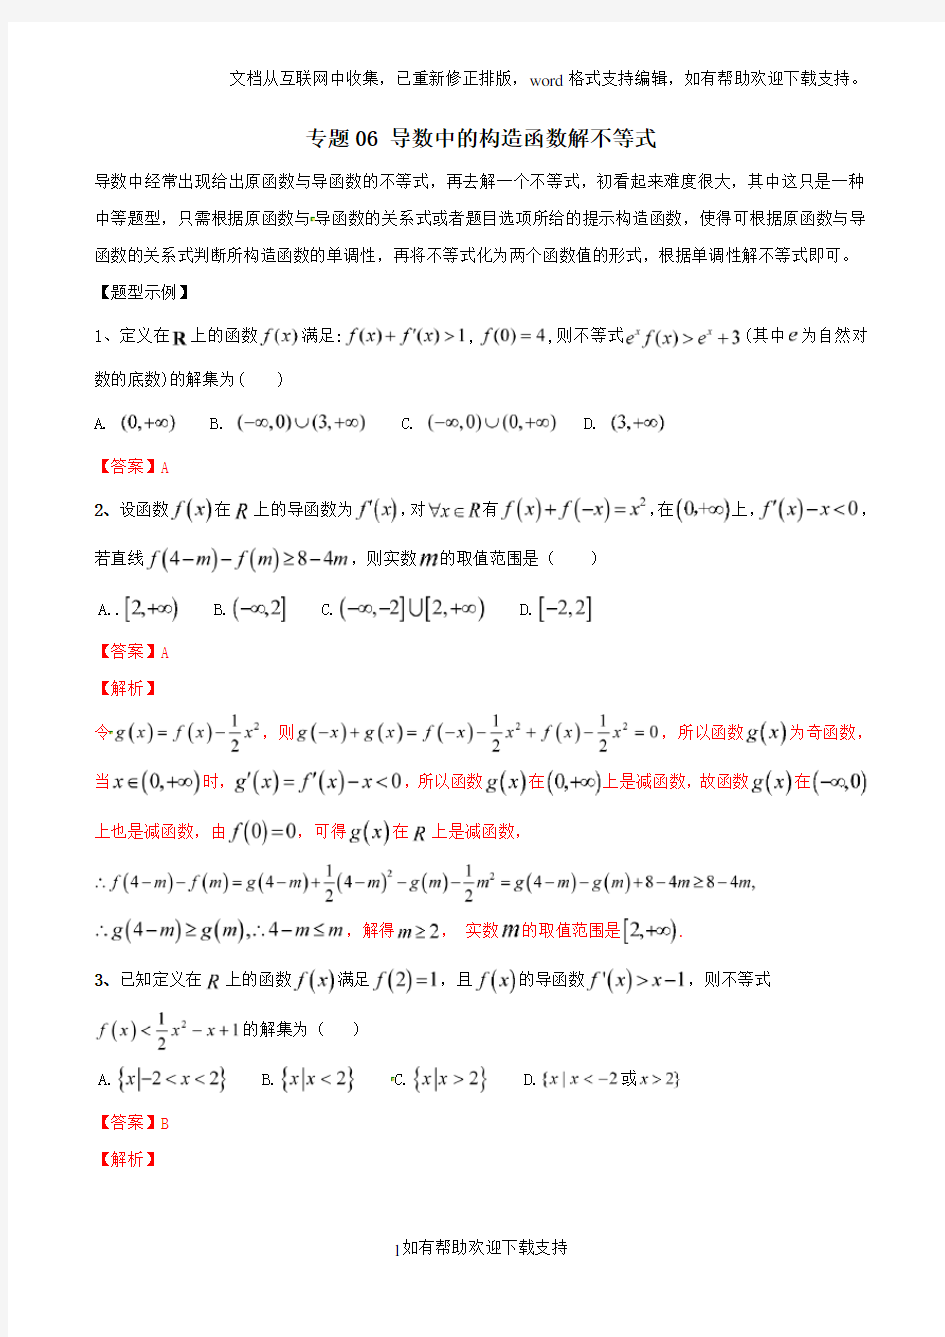 专题06 导数中的构造函数解不等式2020年高考数学总复习之典型例题突破(压轴题系列)(解析版)